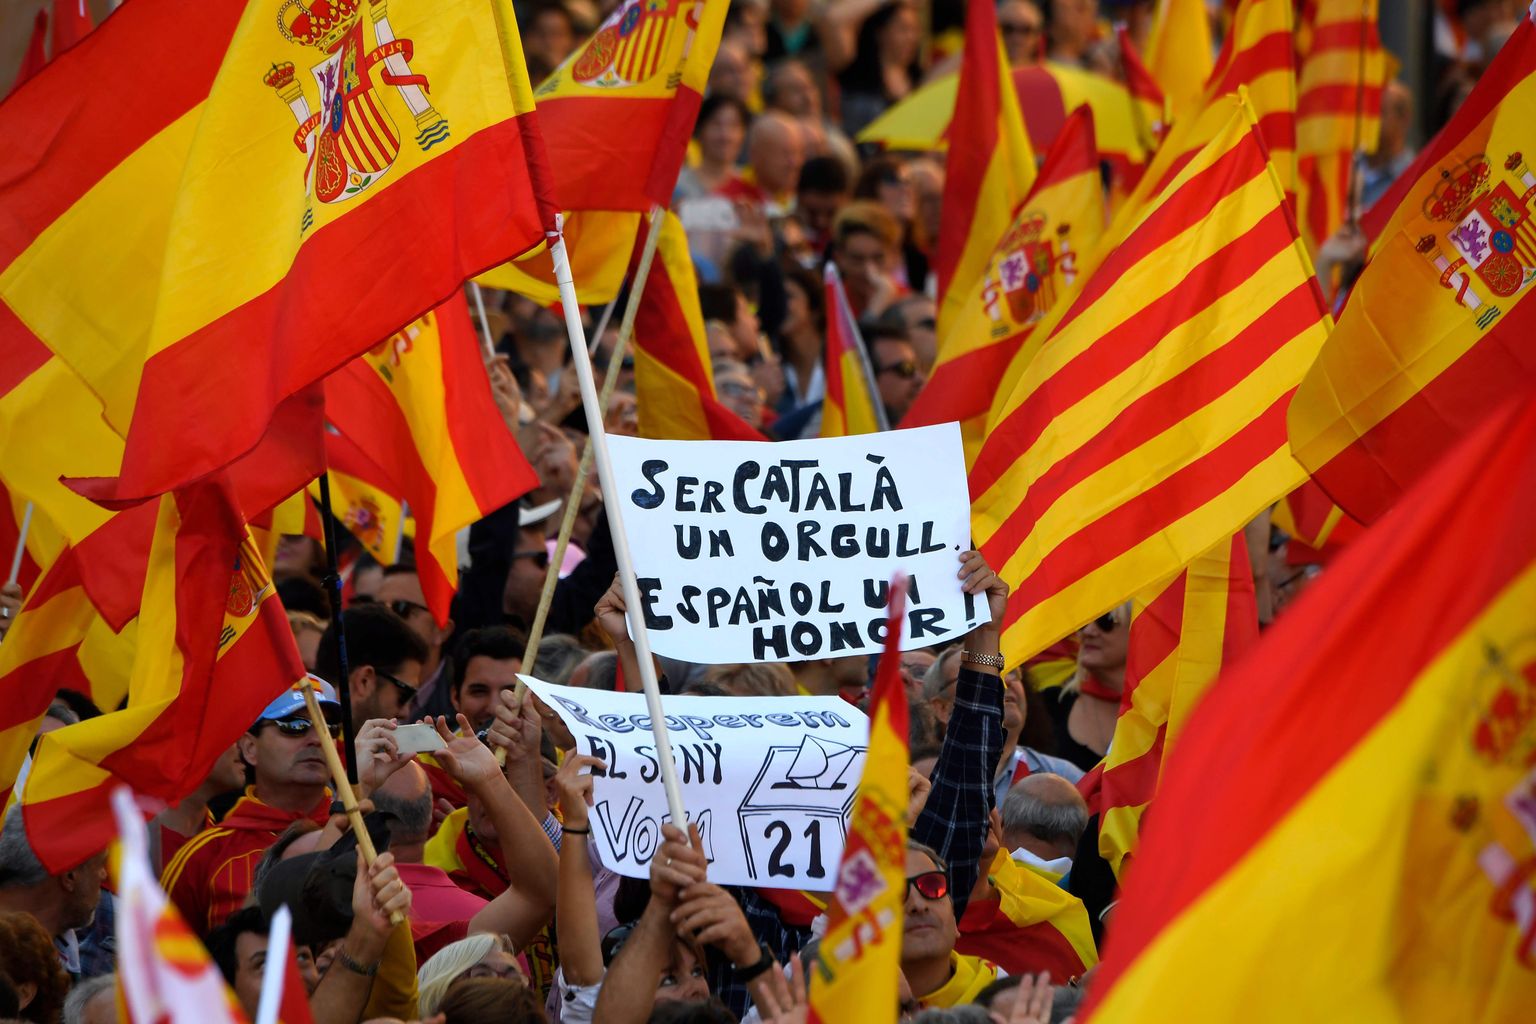 «Katalaan olla on uhke, hispaanlane olla on au,» oli kirjas plakatil, mida kandsid Hispaania ühtsuse toetajad eilsel meeleavaldusel Barcelonas.